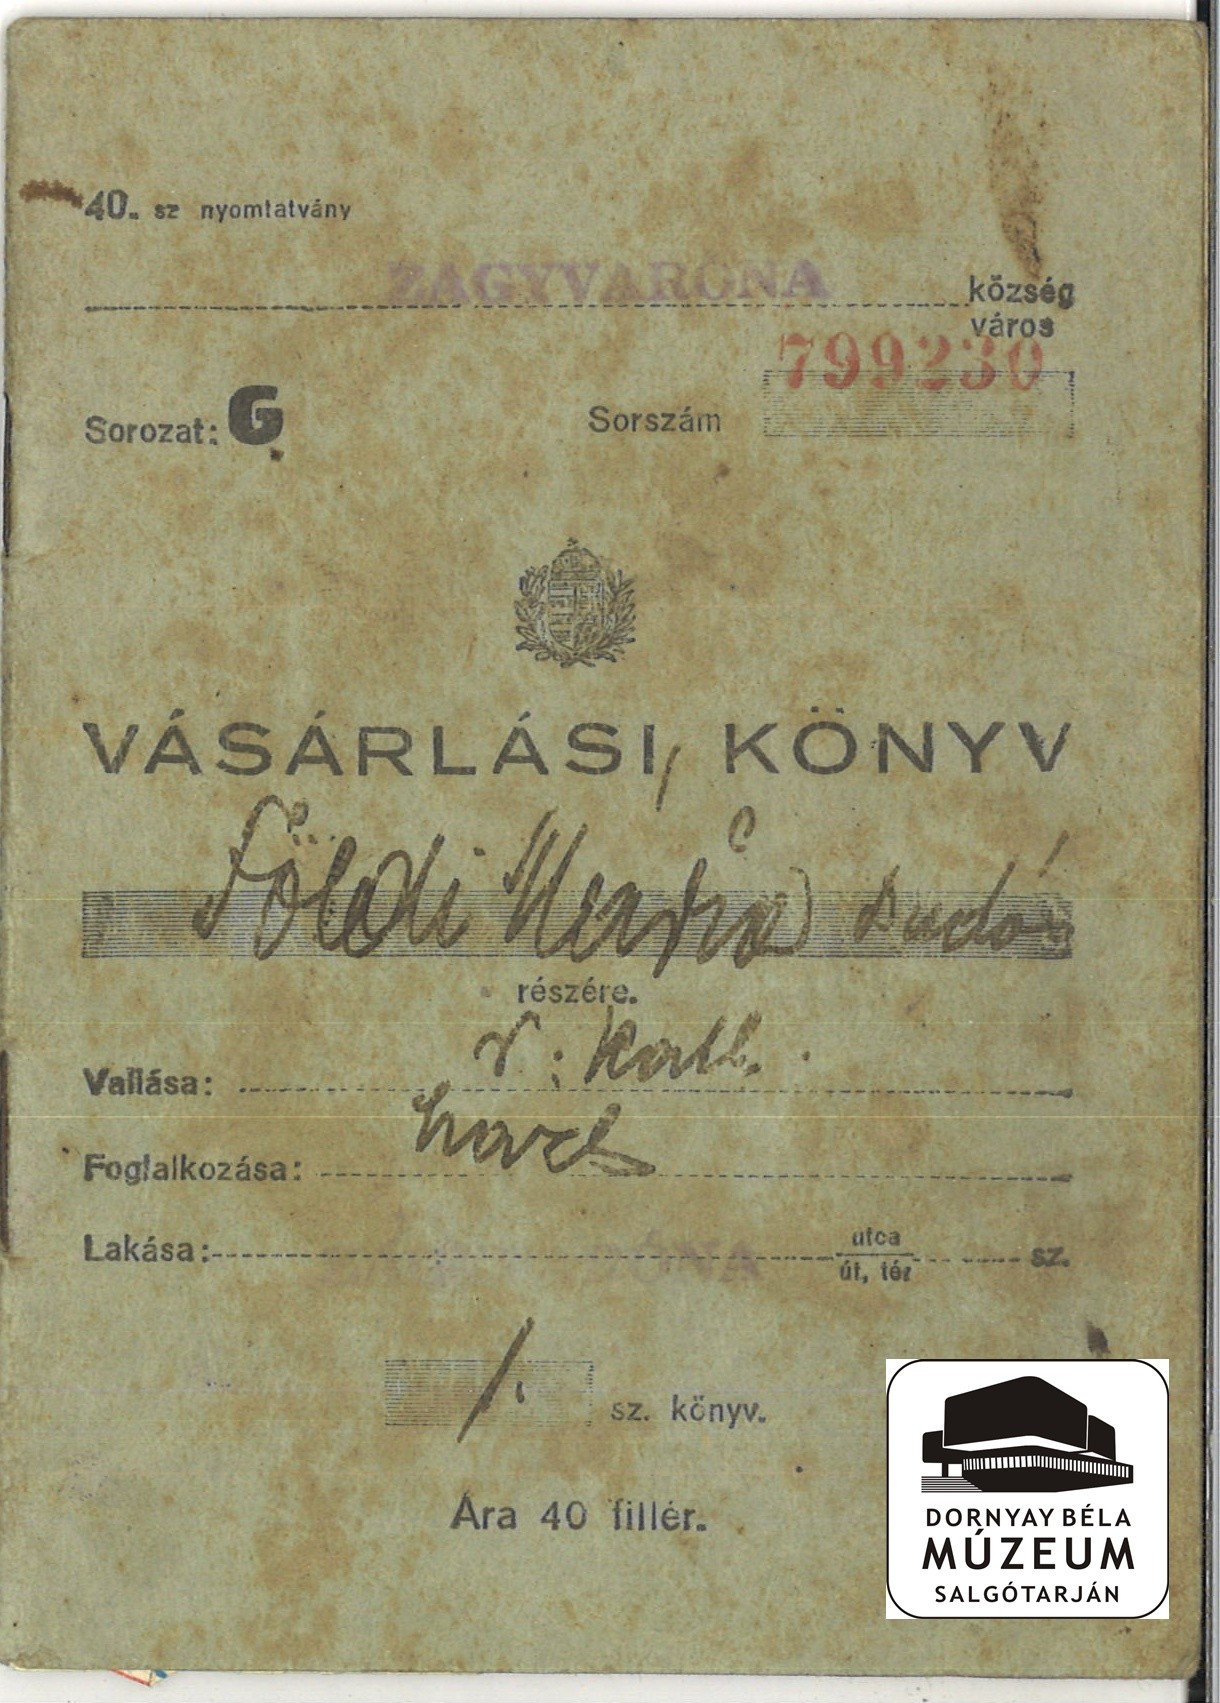 Földi Mária Hangya Szöv. Vásárlási könyv (Dornyay Béla Múzeum, Salgótarján CC BY-NC-SA)